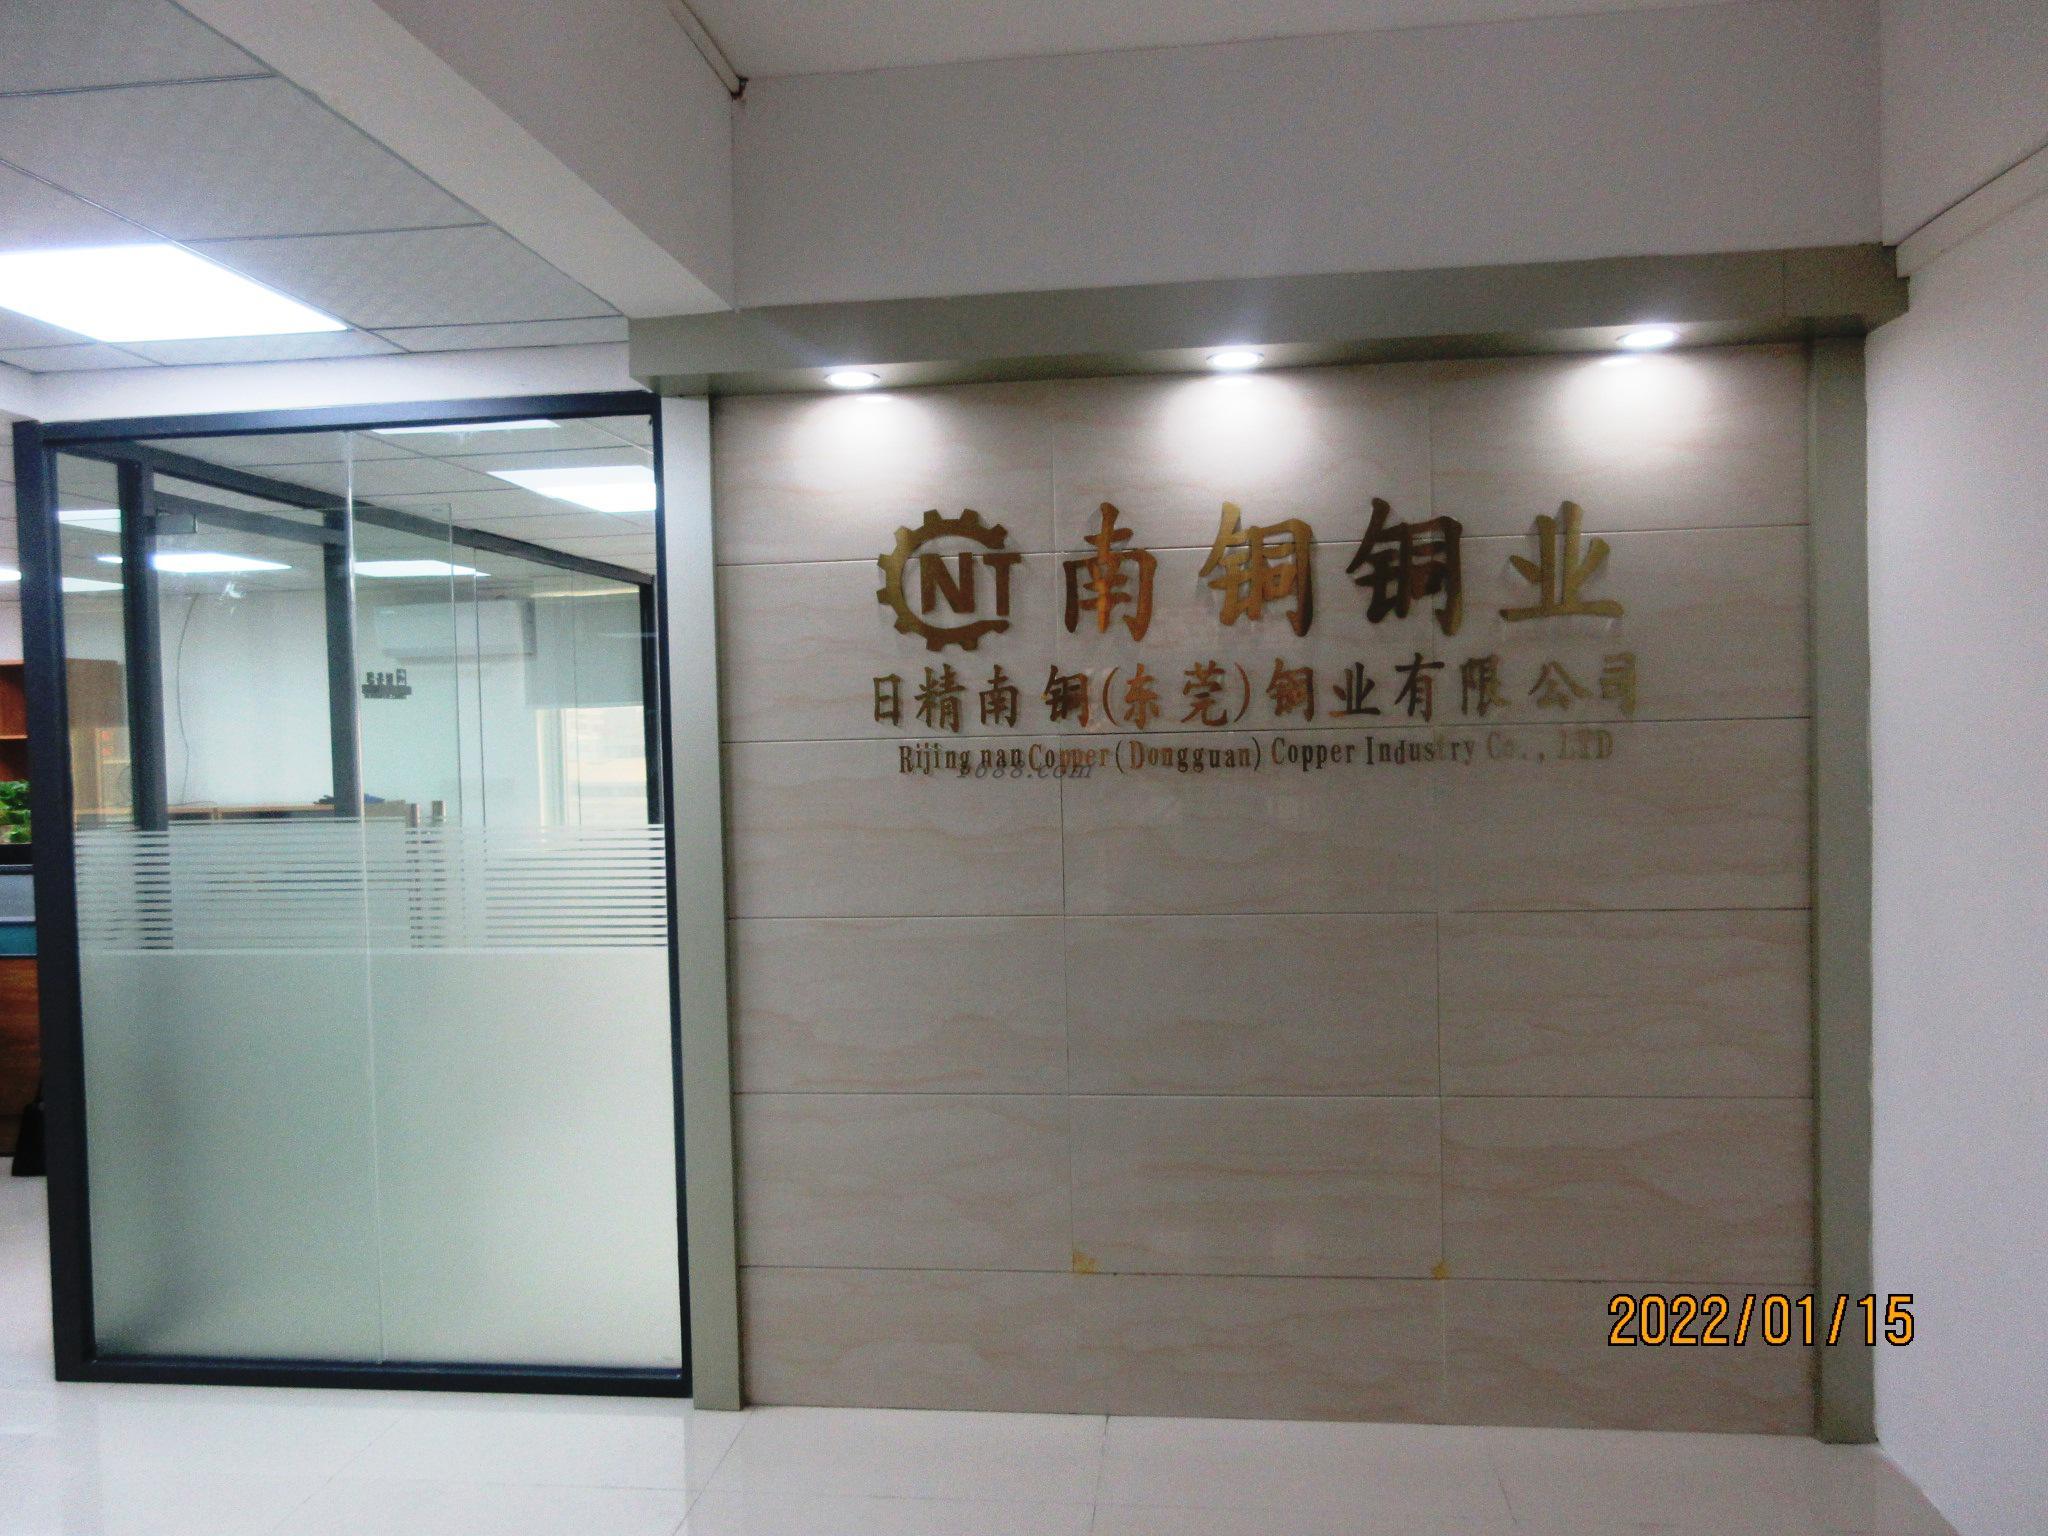   Rijingnan Copper (Dongguan) Co., Ltd